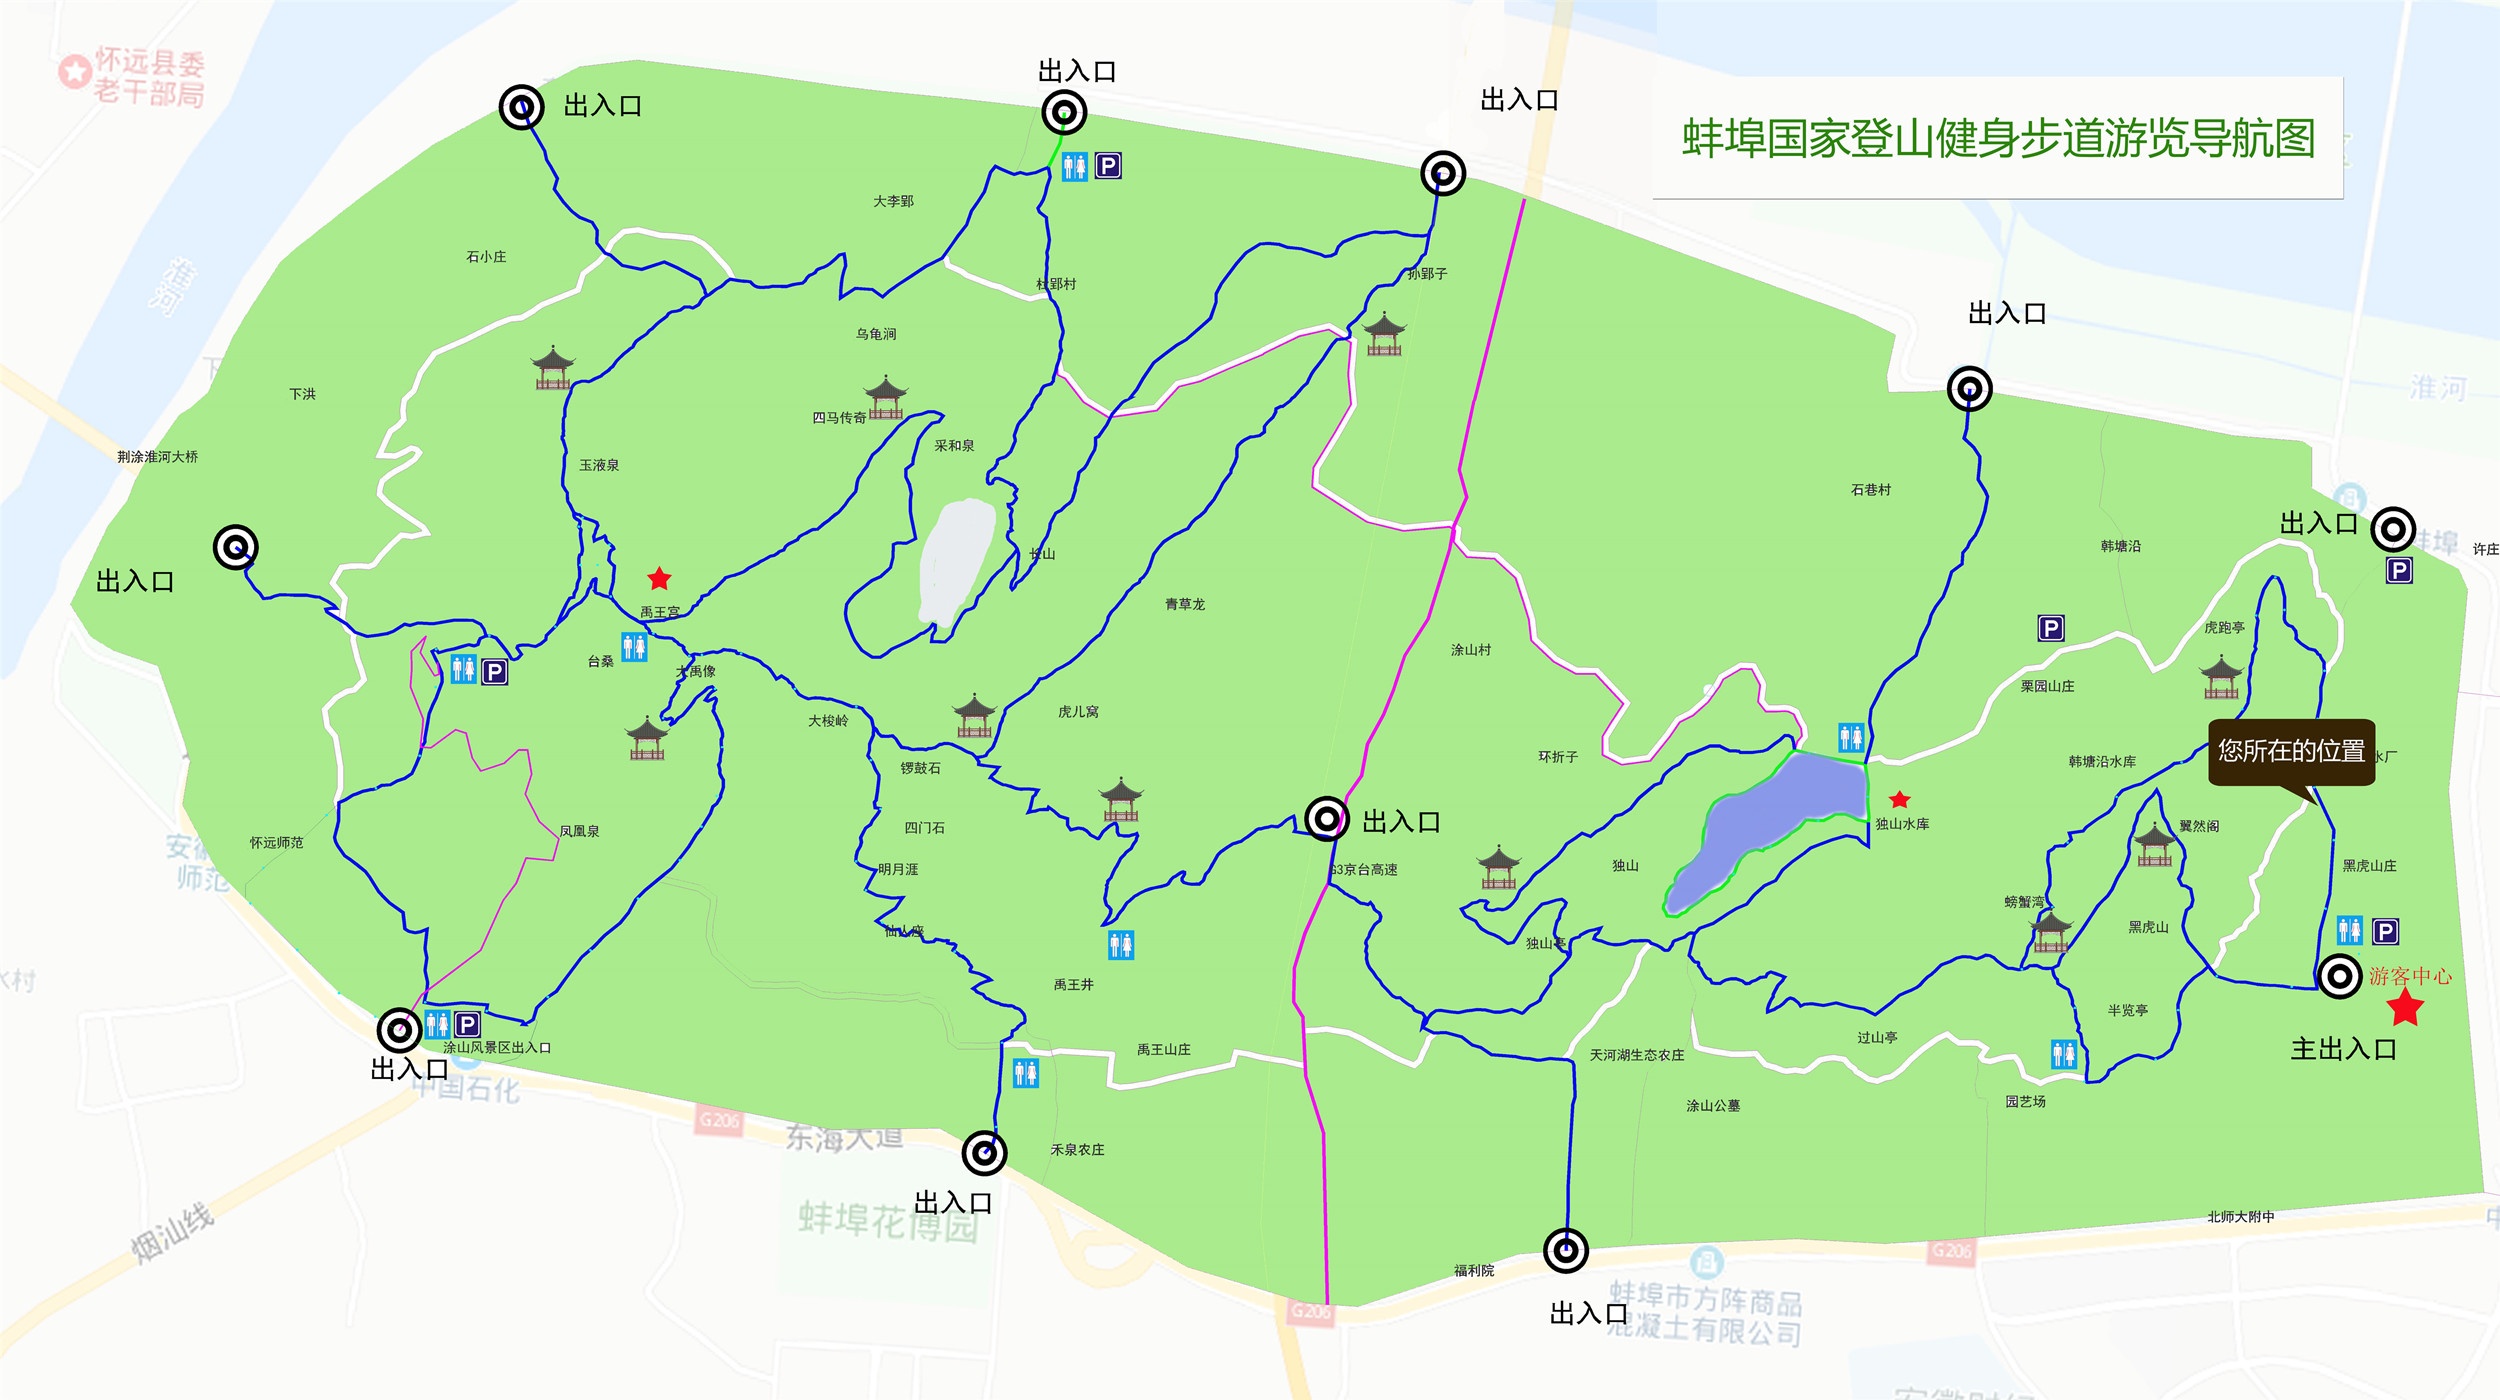 蚌埠涂山步道地图图片